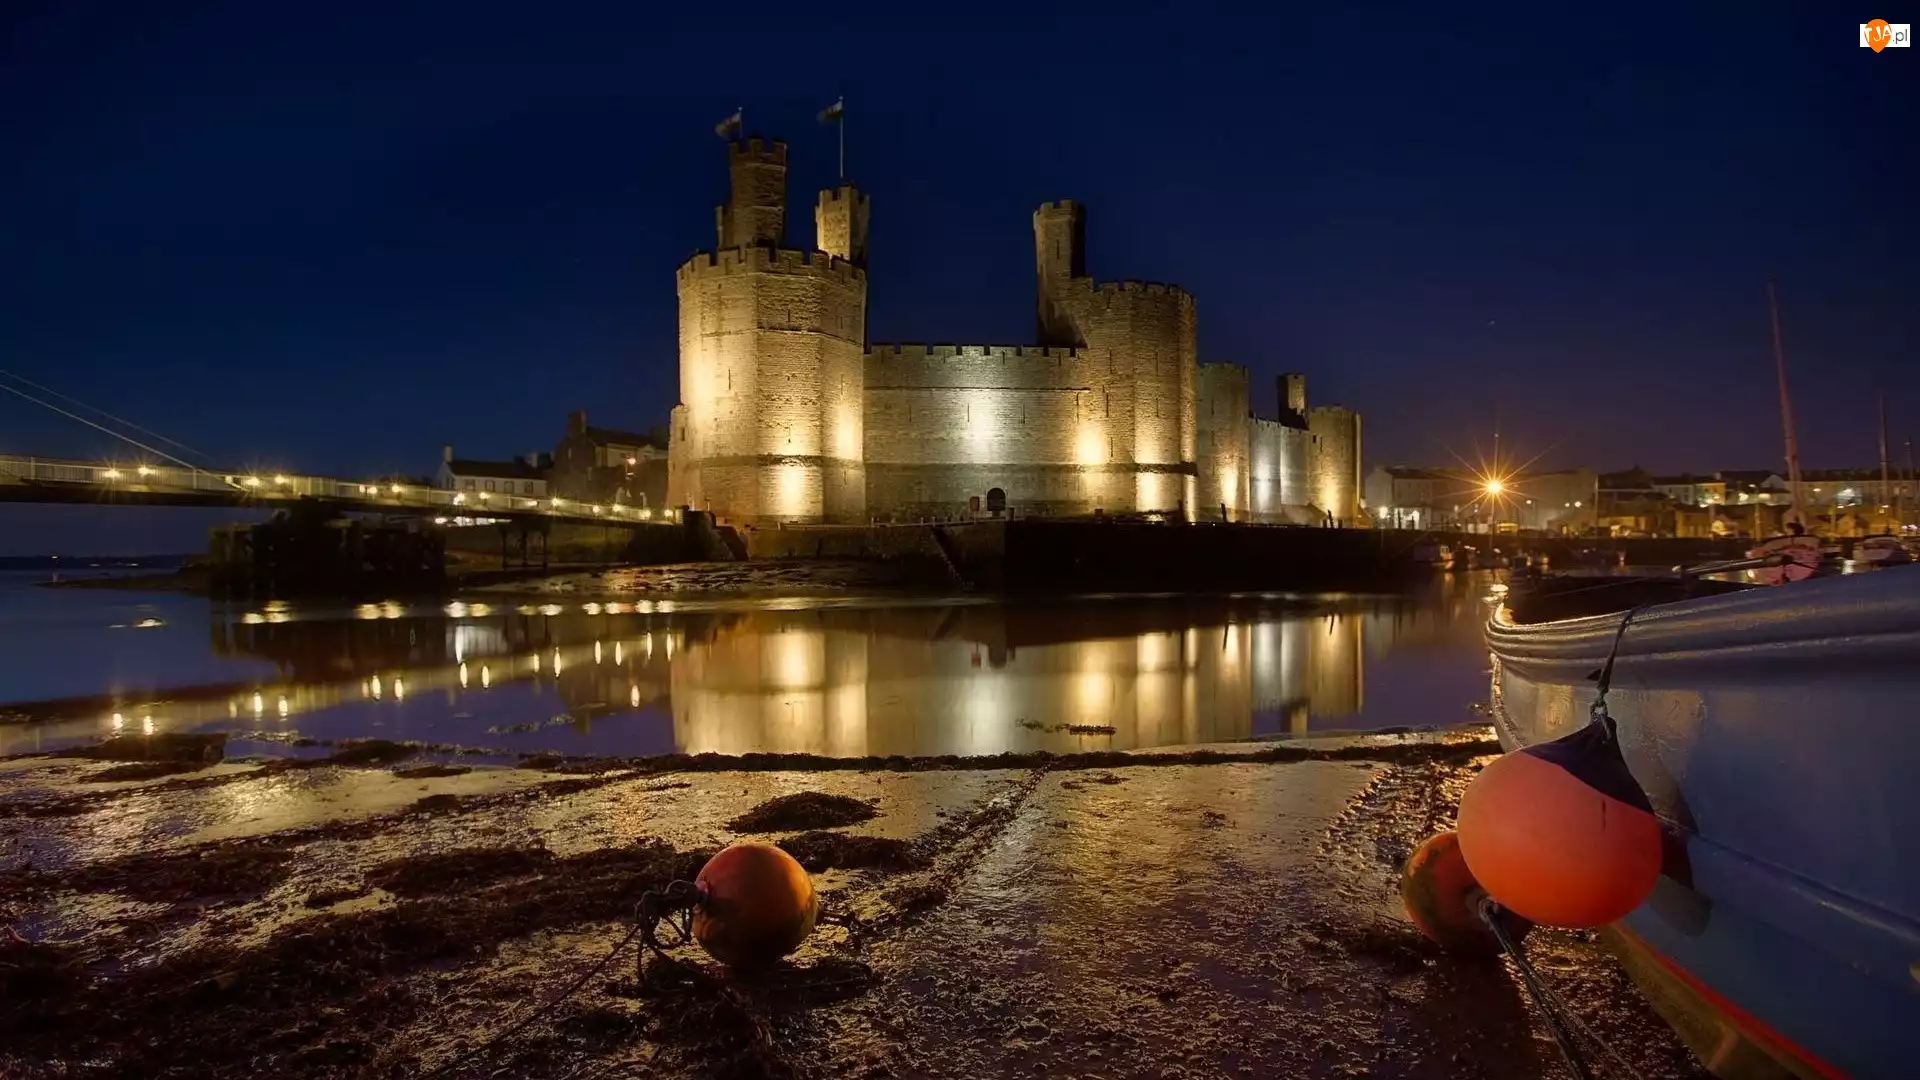 Wielka Brytania, Zamek w Caernarfon, Castell Caernarfon, Walia